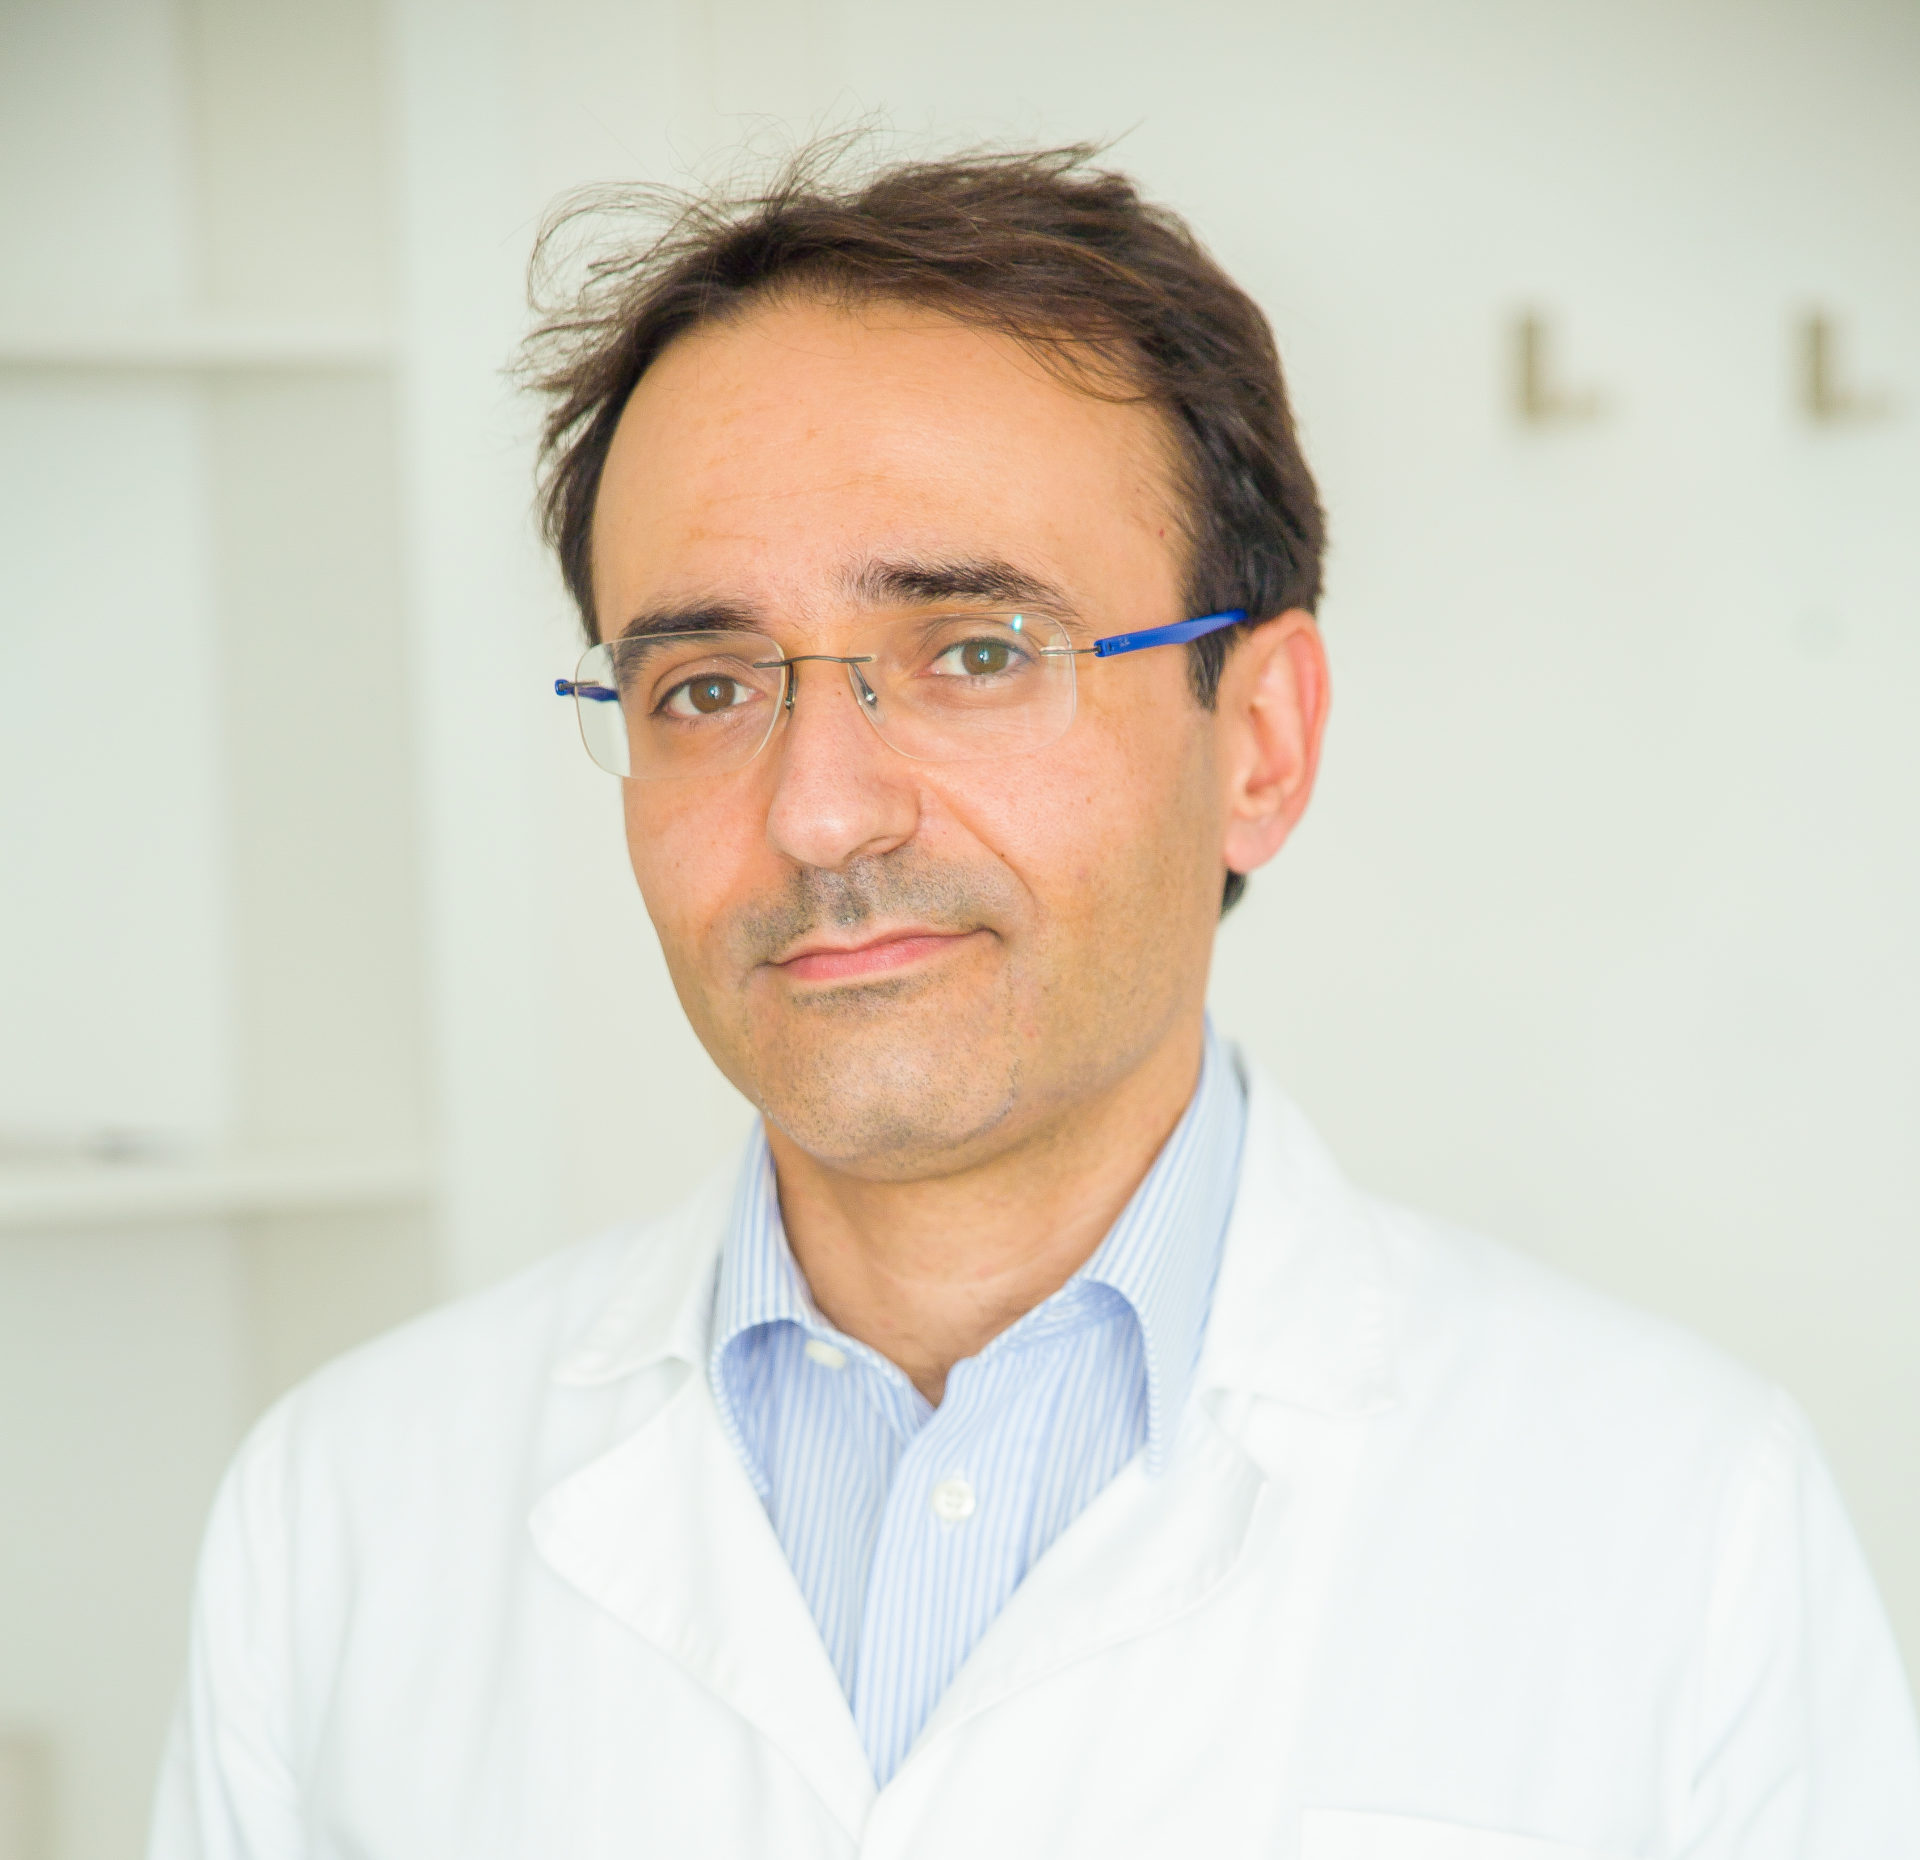 Il Dottor Claudio Cassieri è il Medico Specialista che effettua le Visite Gastroenterologiche presso lo Studio Vircos di Roma San Giovanni